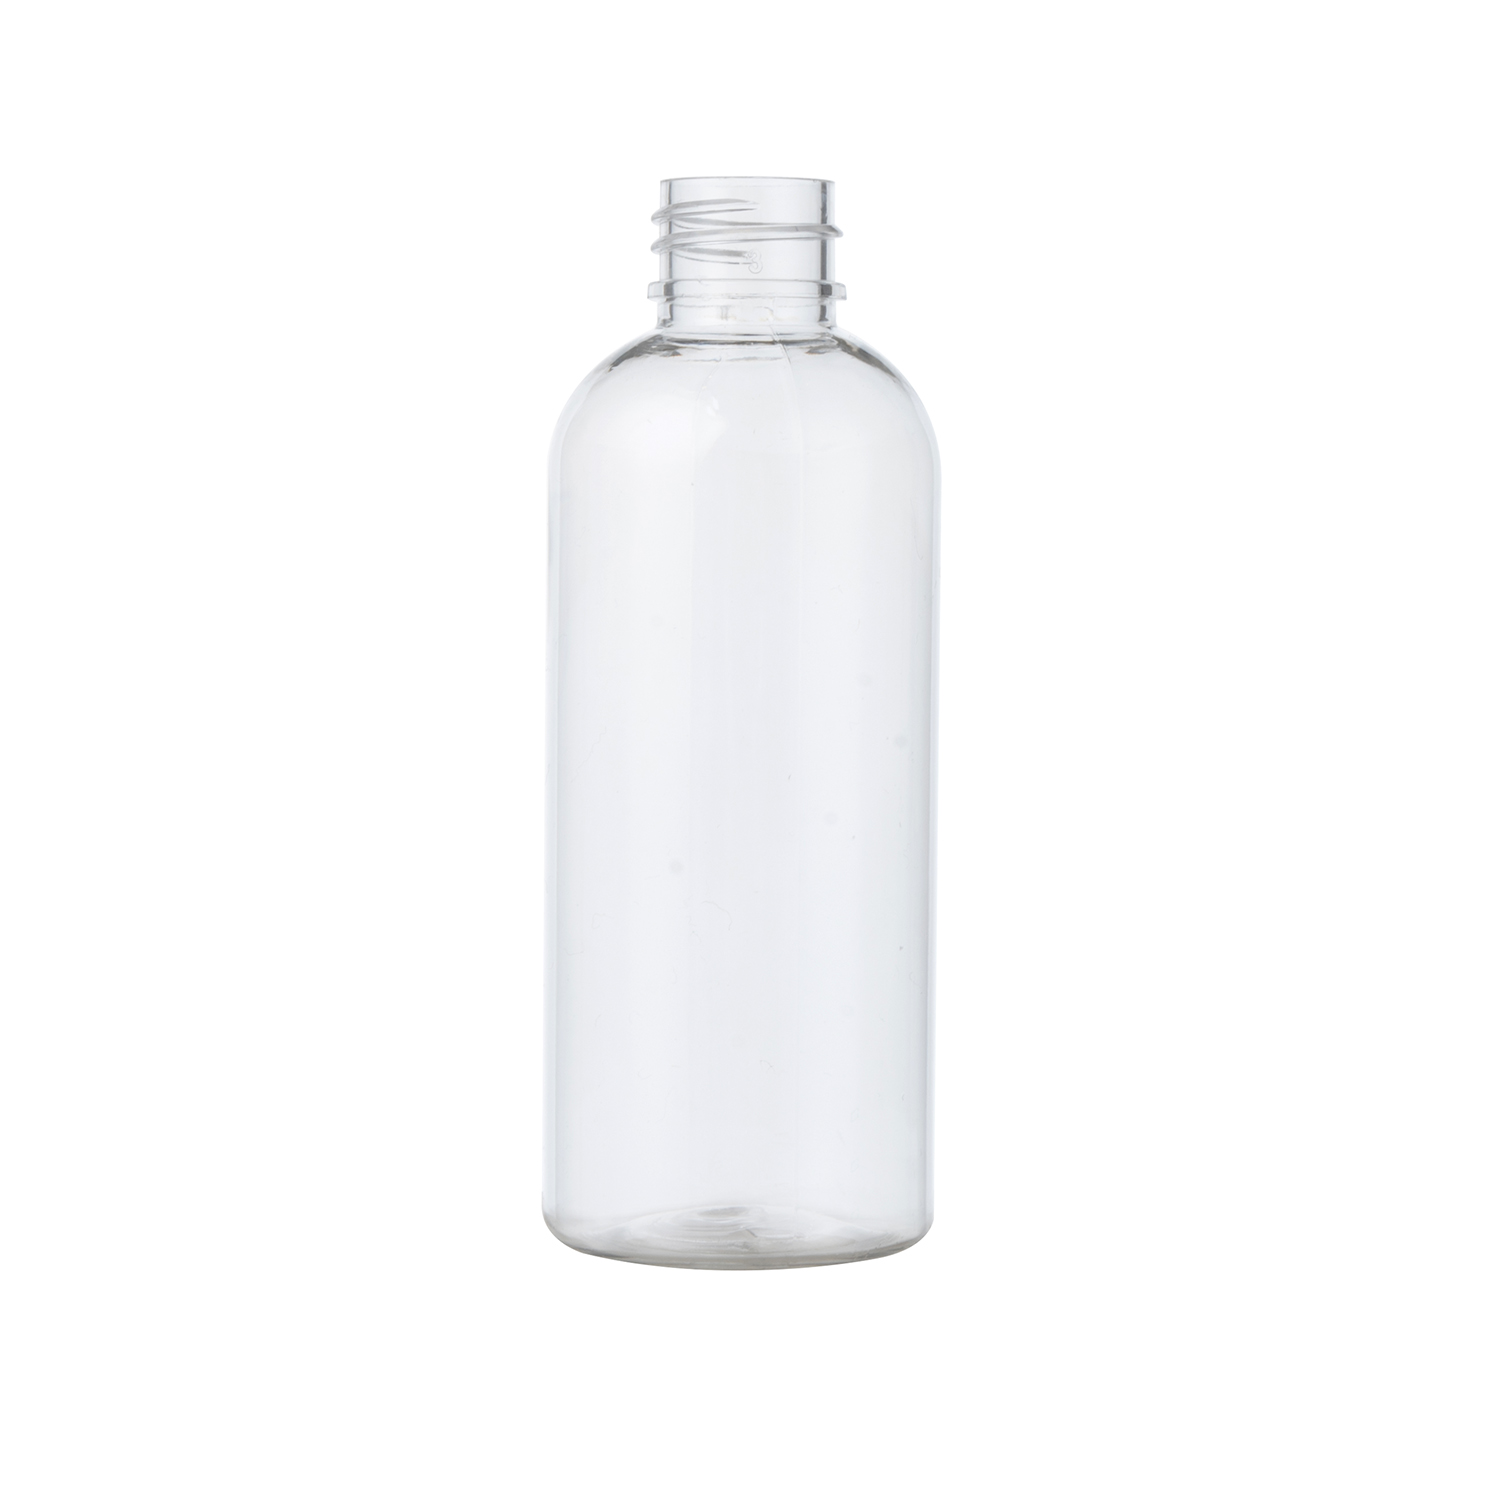 hot sale 50ml Oval Shaped Pet Bottle Clear